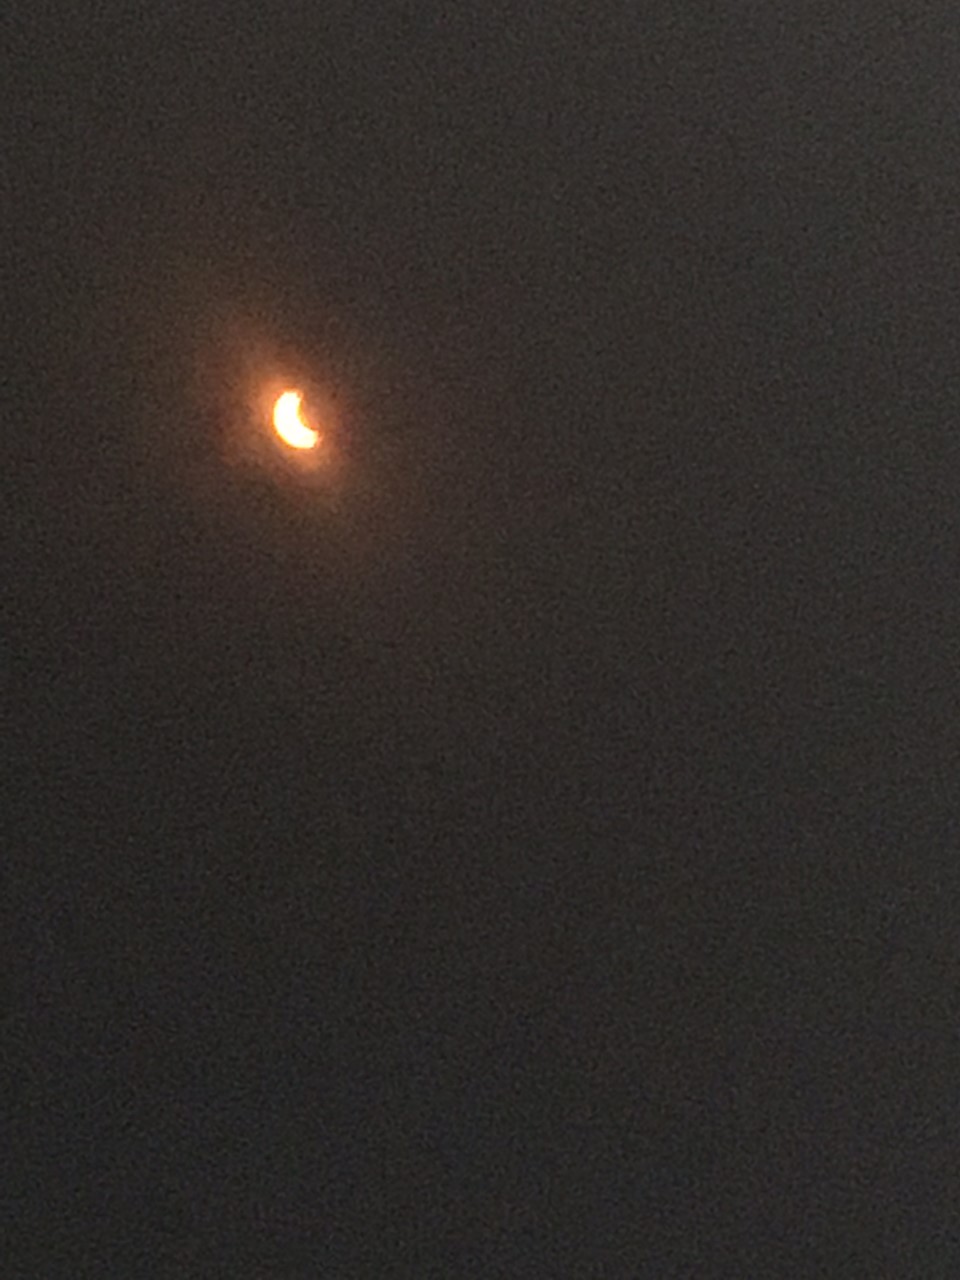 Solar eclipse in Nashville, TN